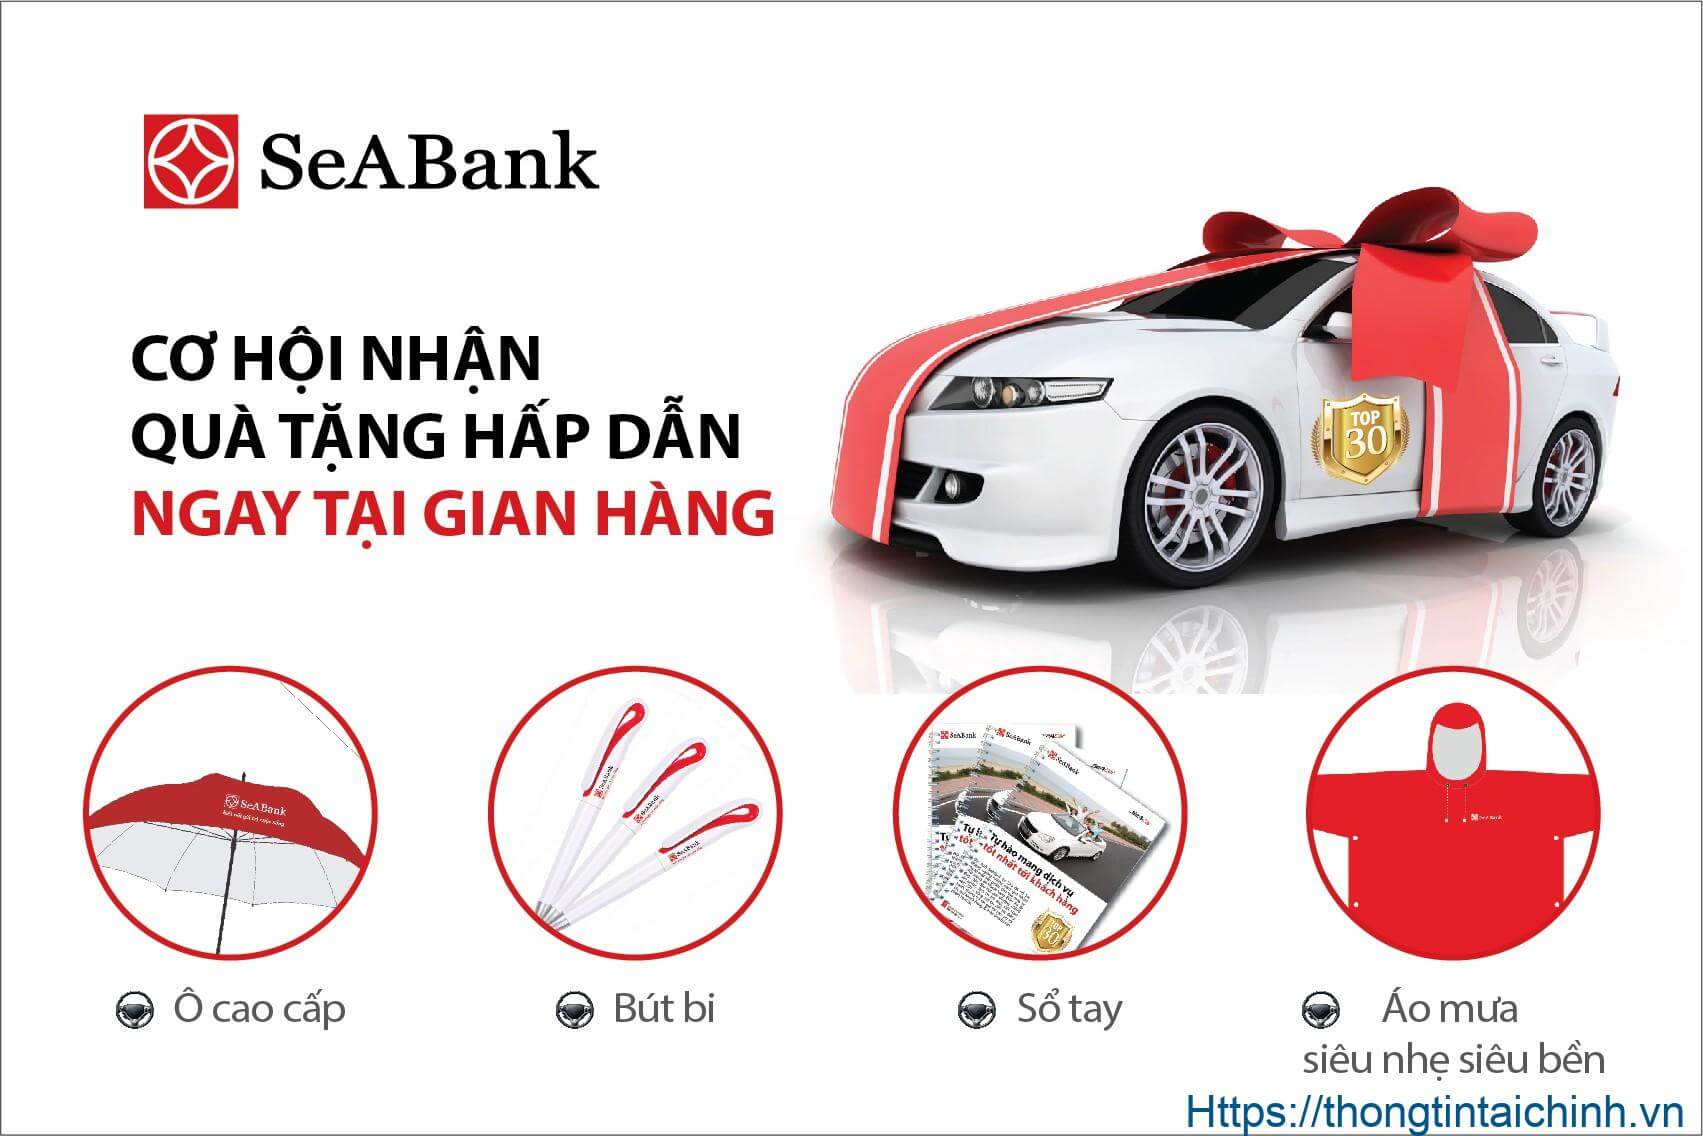 Lãi suất vay mua xe tại ngân hàng SeABank là 8,9%/năm cố định trong 12 tháng